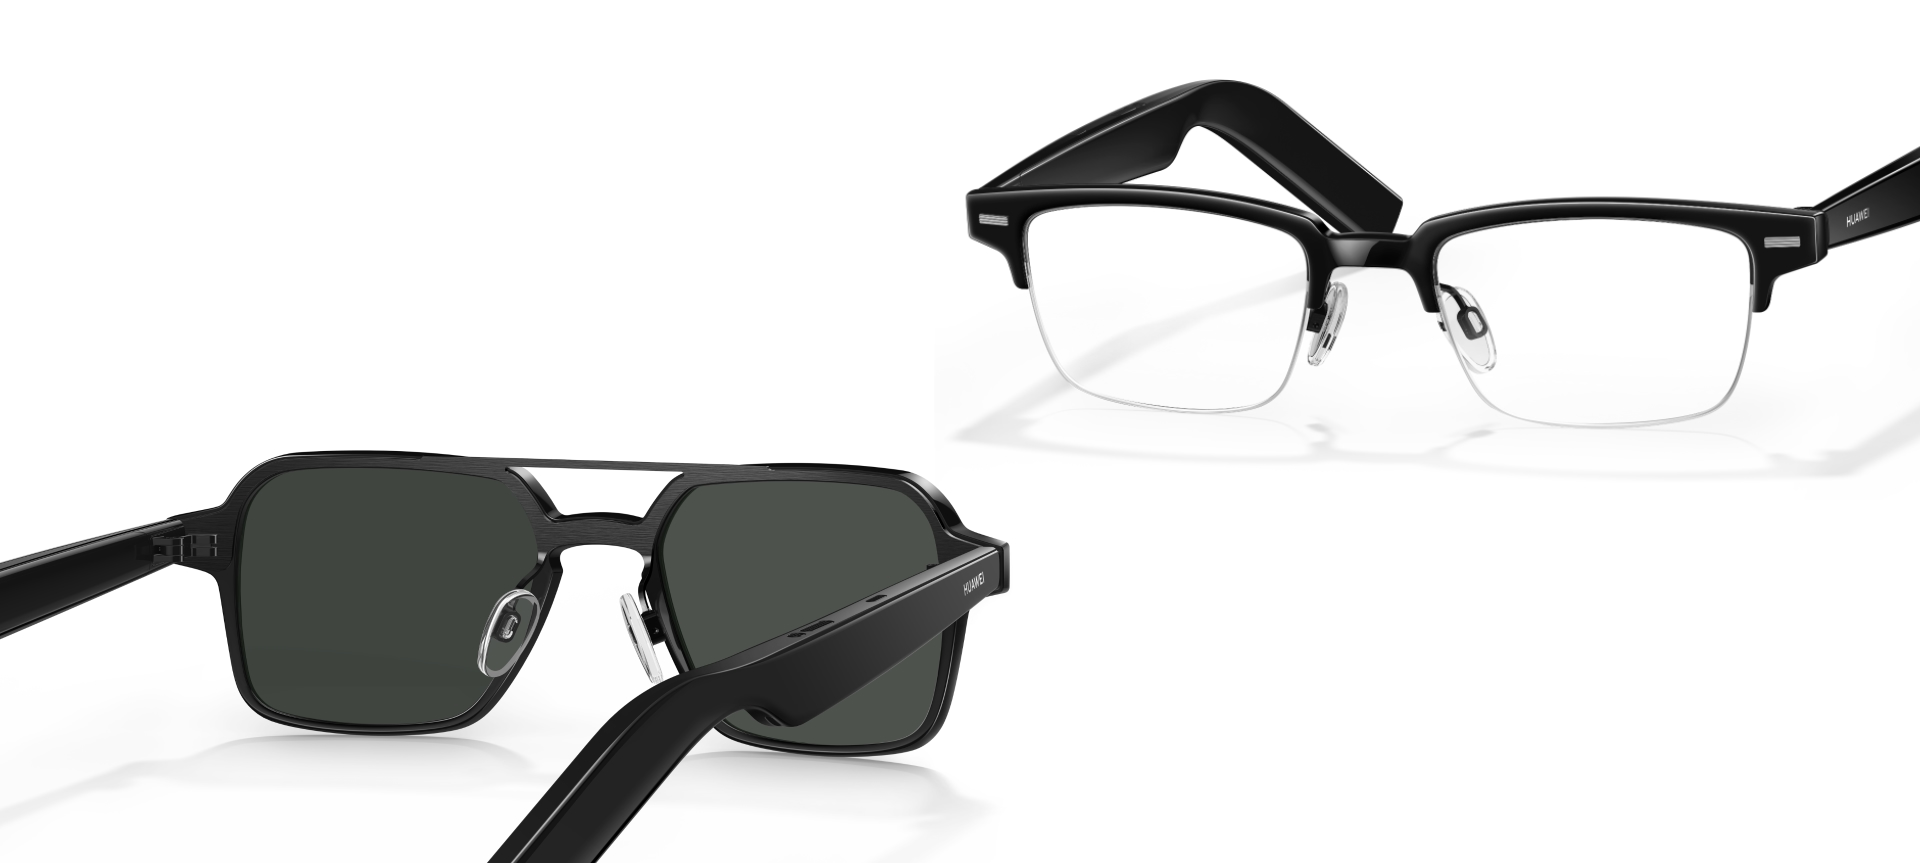 Huawei Eyewear 2 smarta glasögon med högtalare och Zeiss-linser har gjort sin globala debut